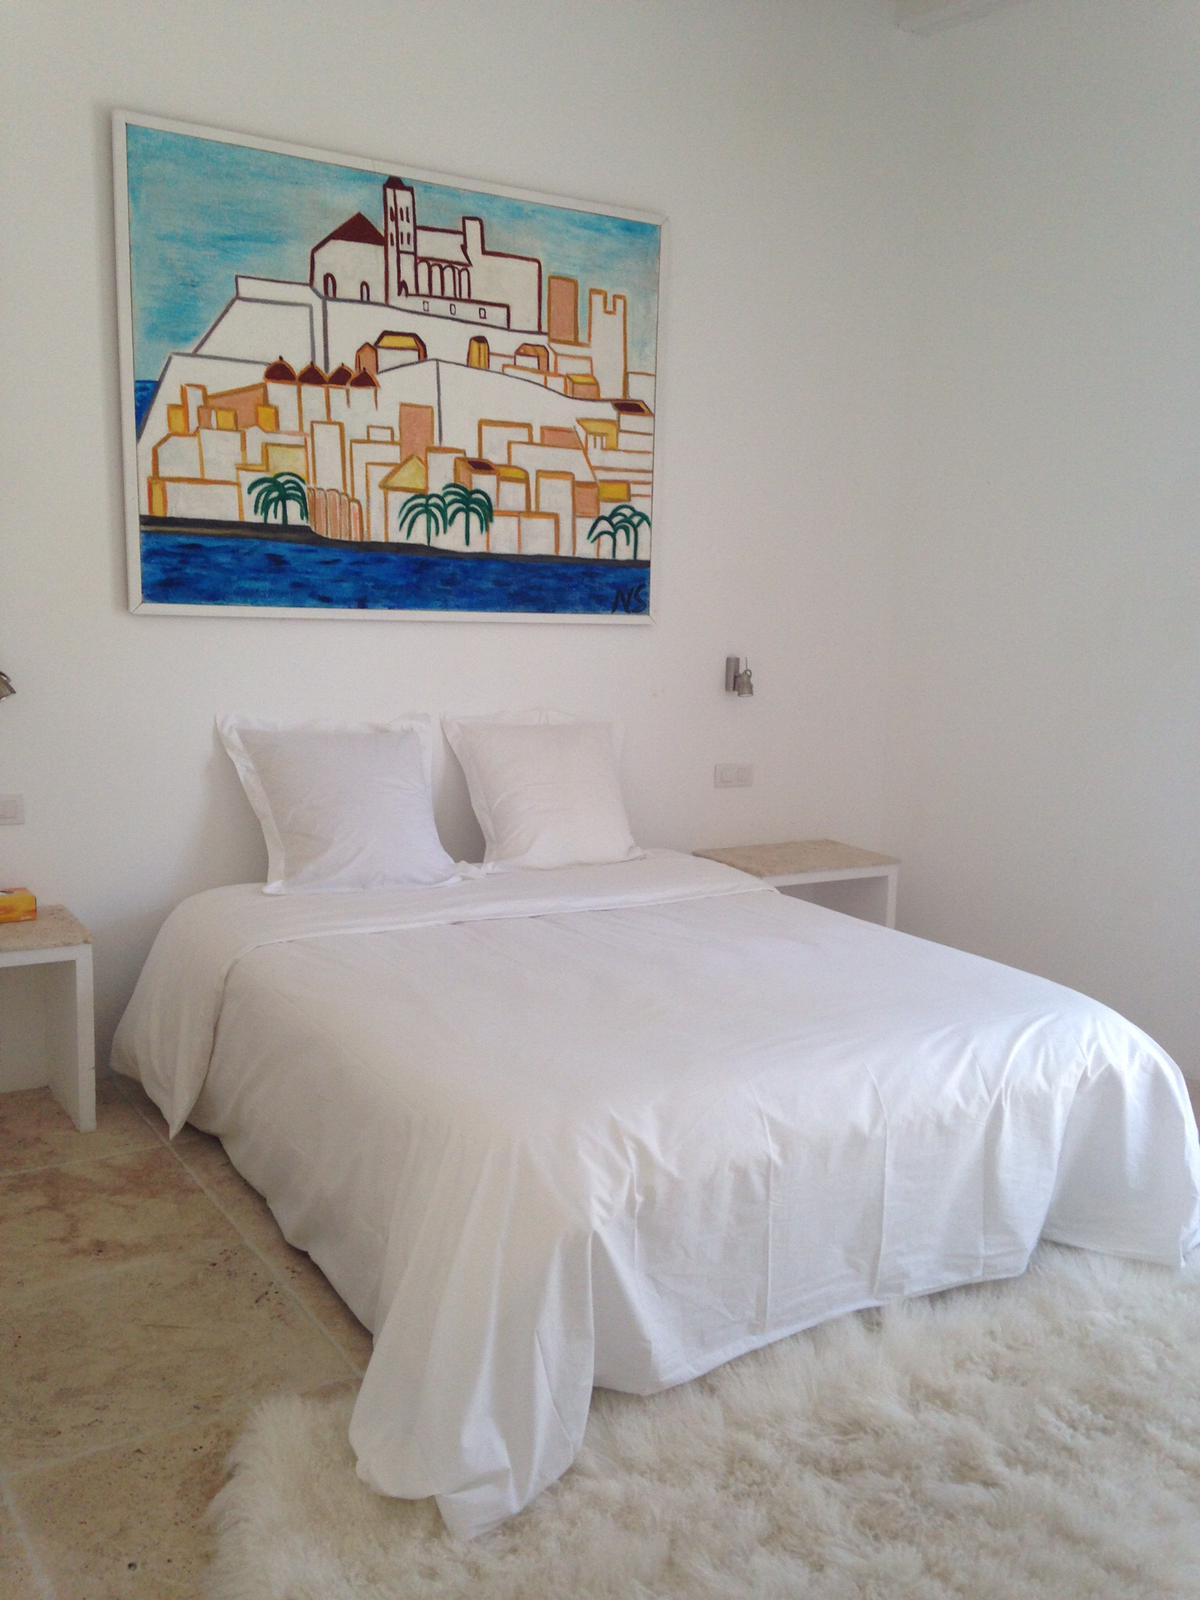 Wunderschöne Penthousewohnung in der Altstadt von Ibiza